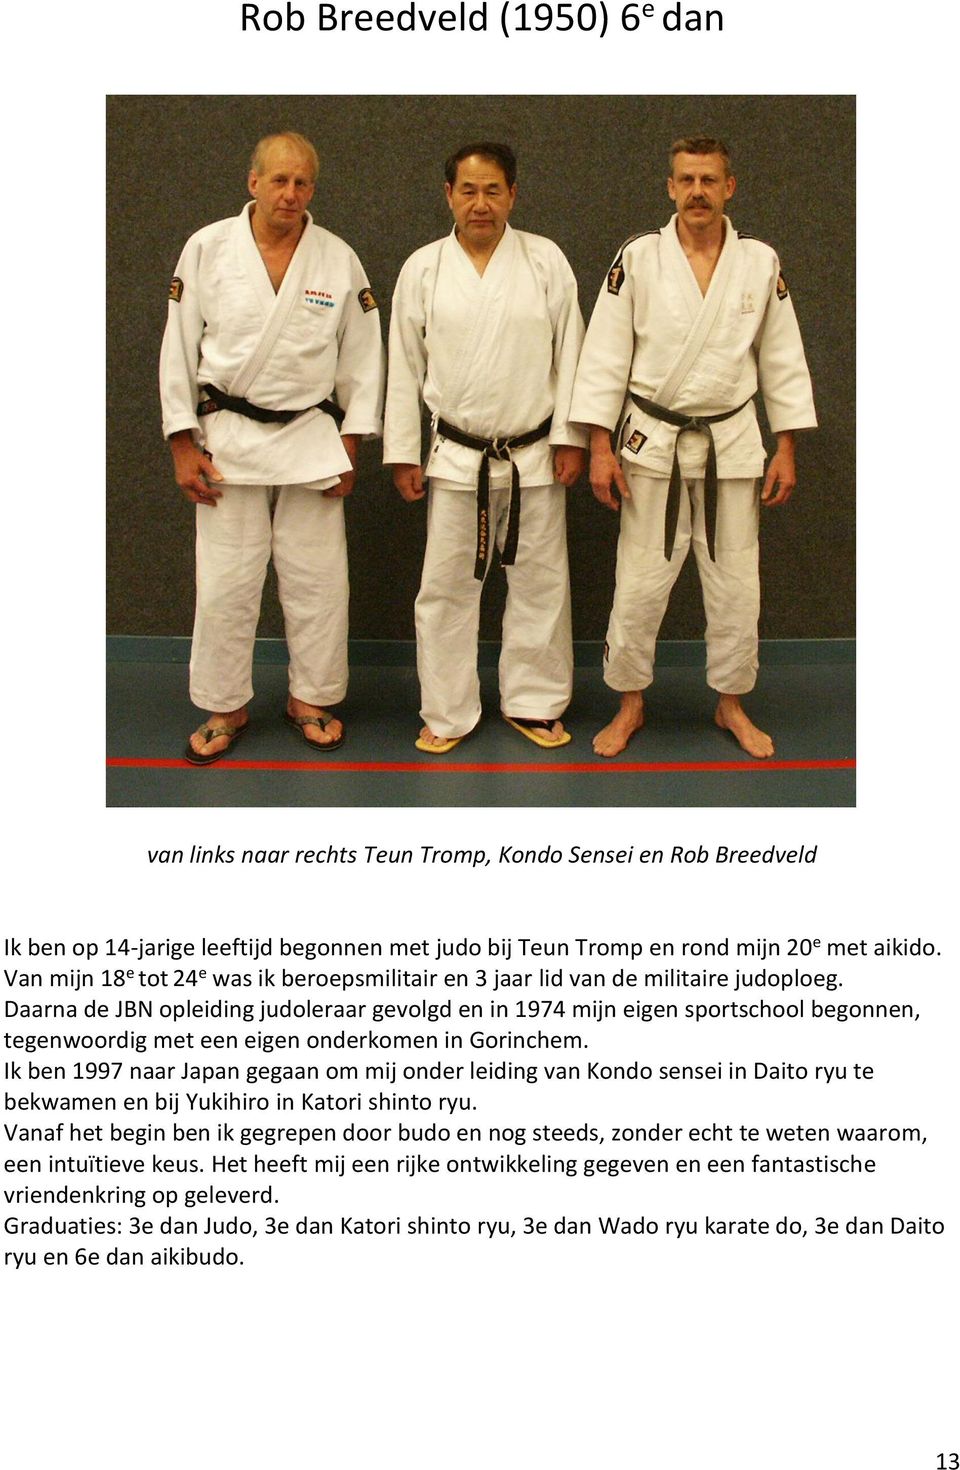 Daarna de JBN opleiding judoleraar gevolgd en in 1974 mijn eigen sportschool begonnen, tegenwoordig met een eigen onderkomen in Gorinchem.